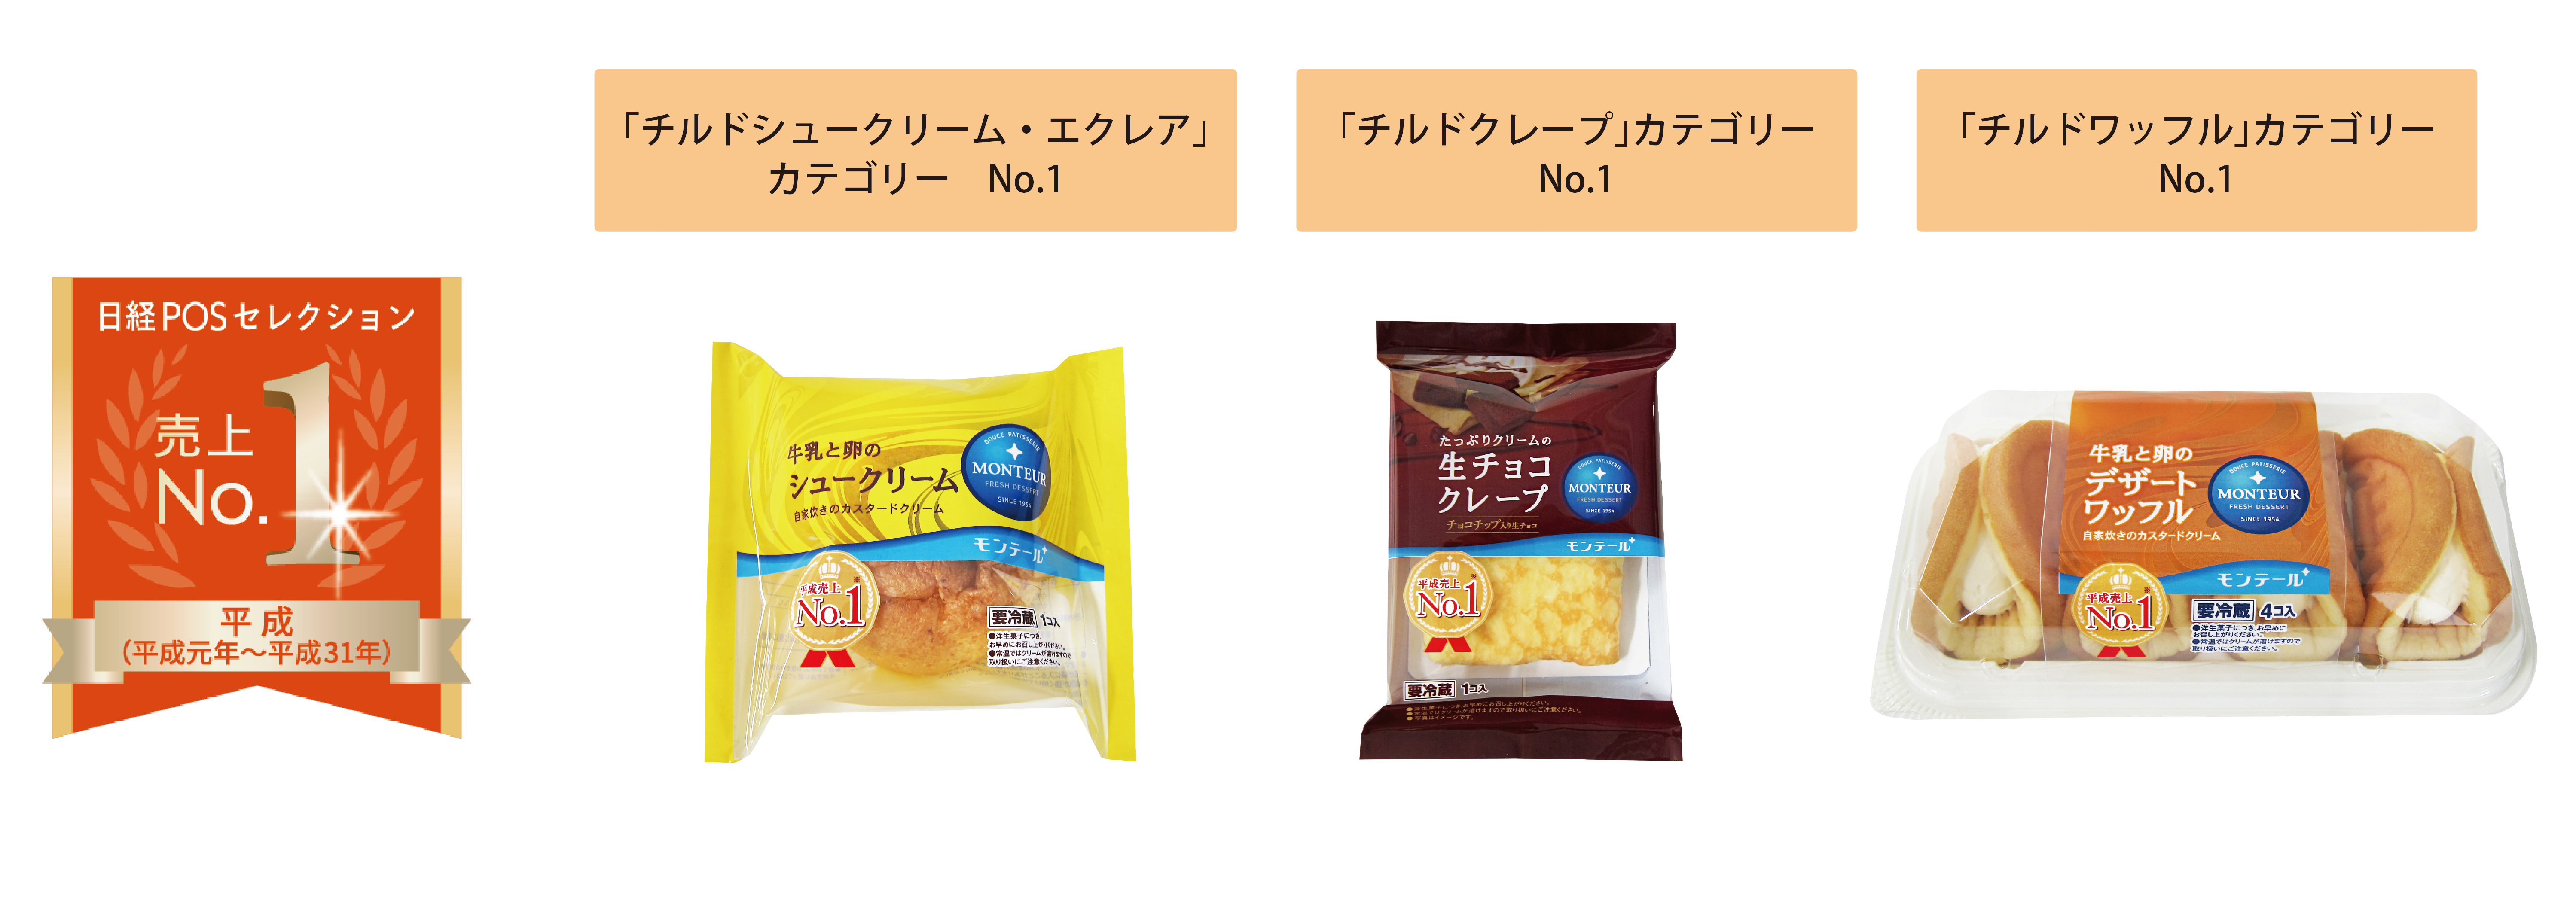 老舗菓子屋がつくる とろもち食感の大福
「酪生チーズ大福」3月1日に新発売